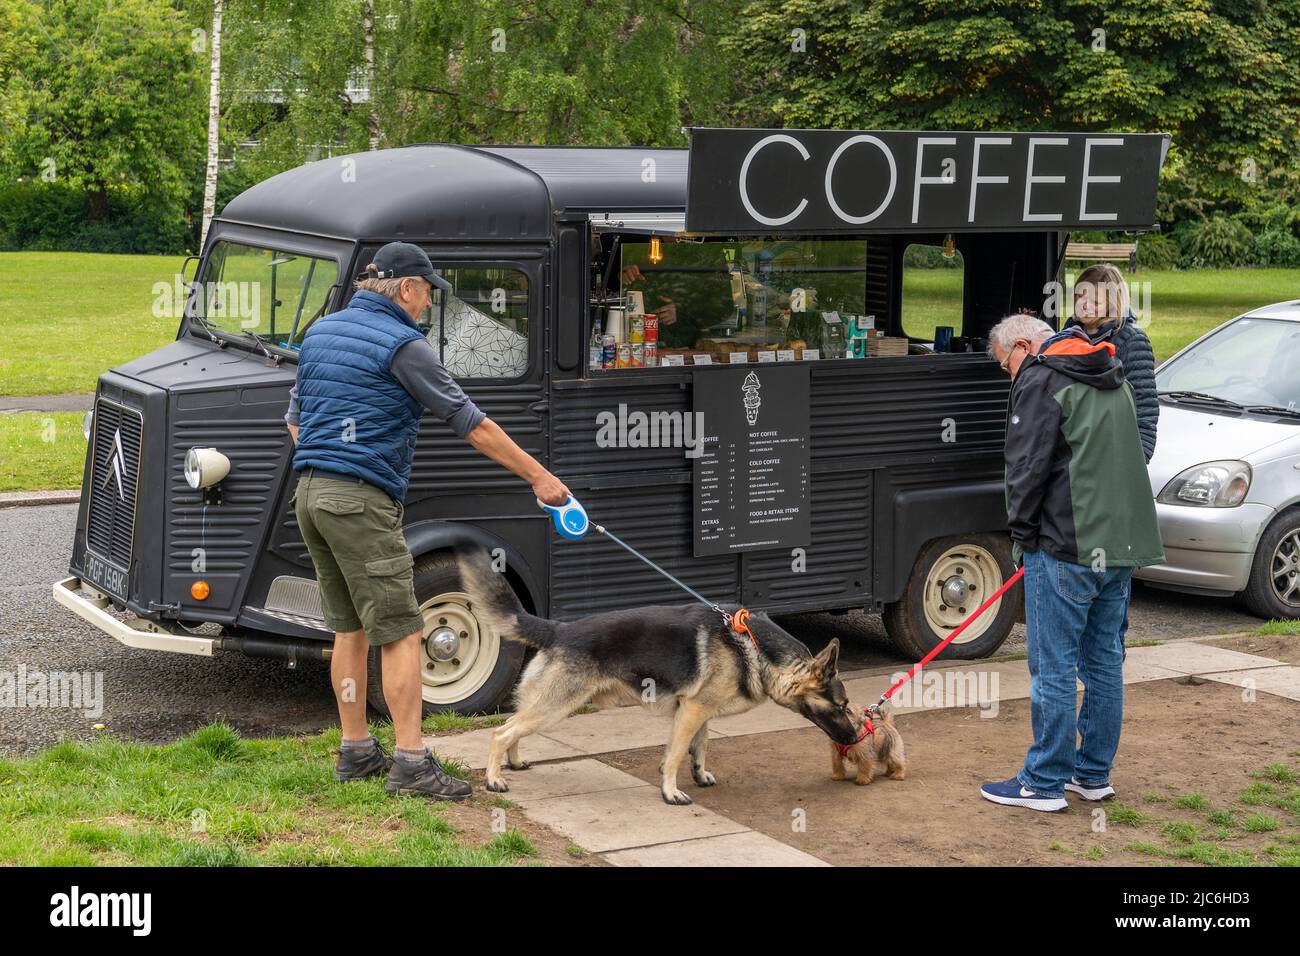 Big Dog incontra Little Dog in un furgone caffè a Gosforth, Newcastle upon Tyne, Regno Unito. Foto Stock